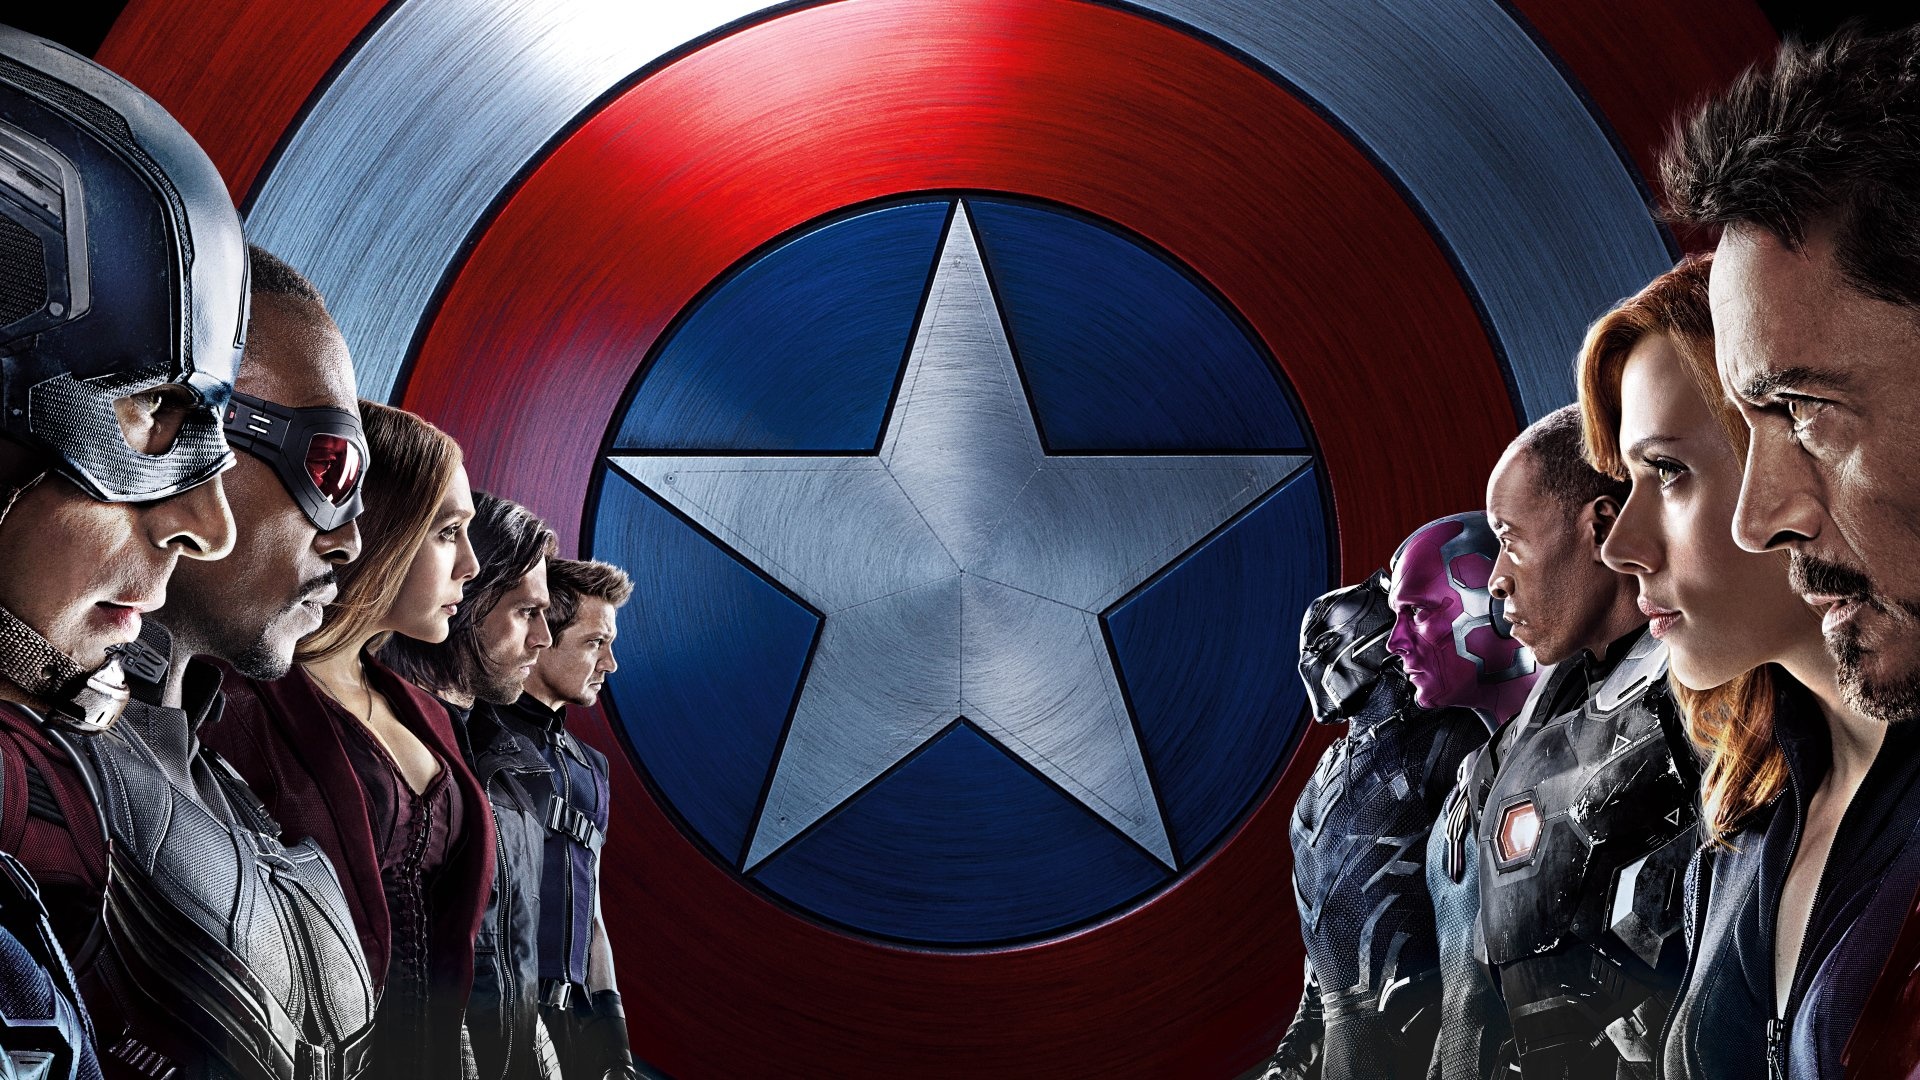 Captain America: Civil War, HD wallpapers, Epic battle scenes, Superhero film, 1920x1080 Full HD Desktop